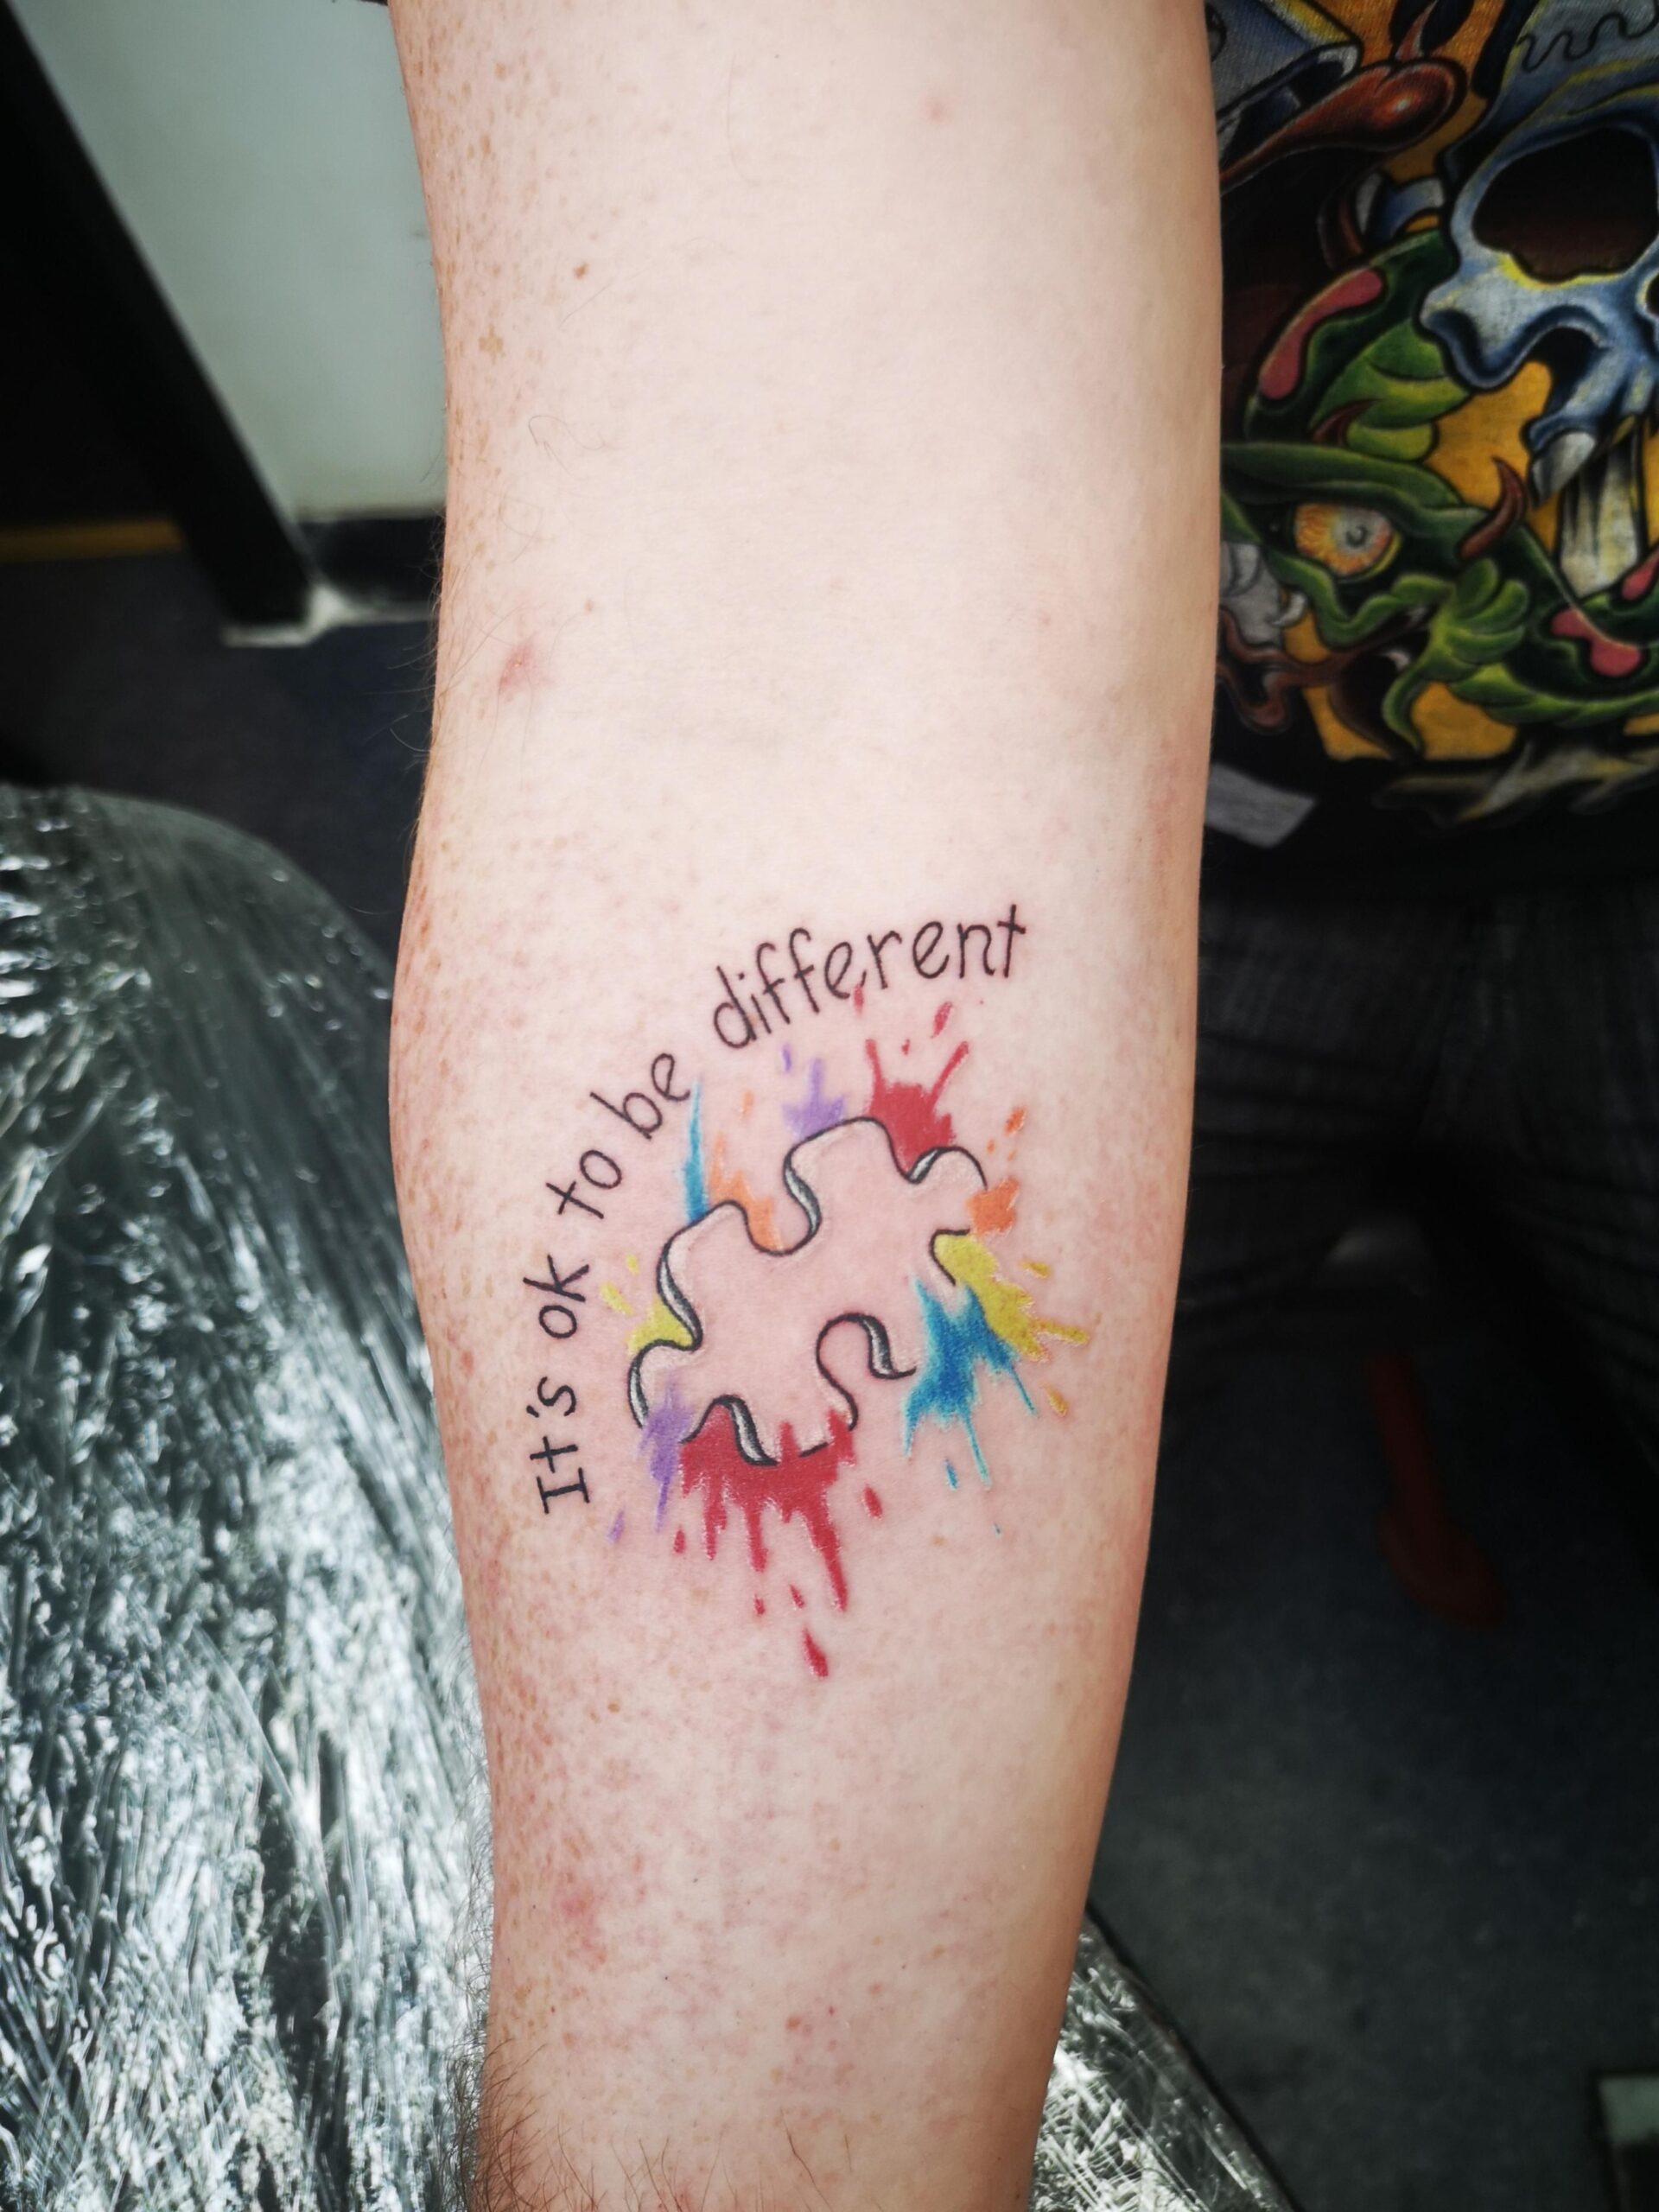 autistic tattoo designs Bulan 4 Pin auf Tats